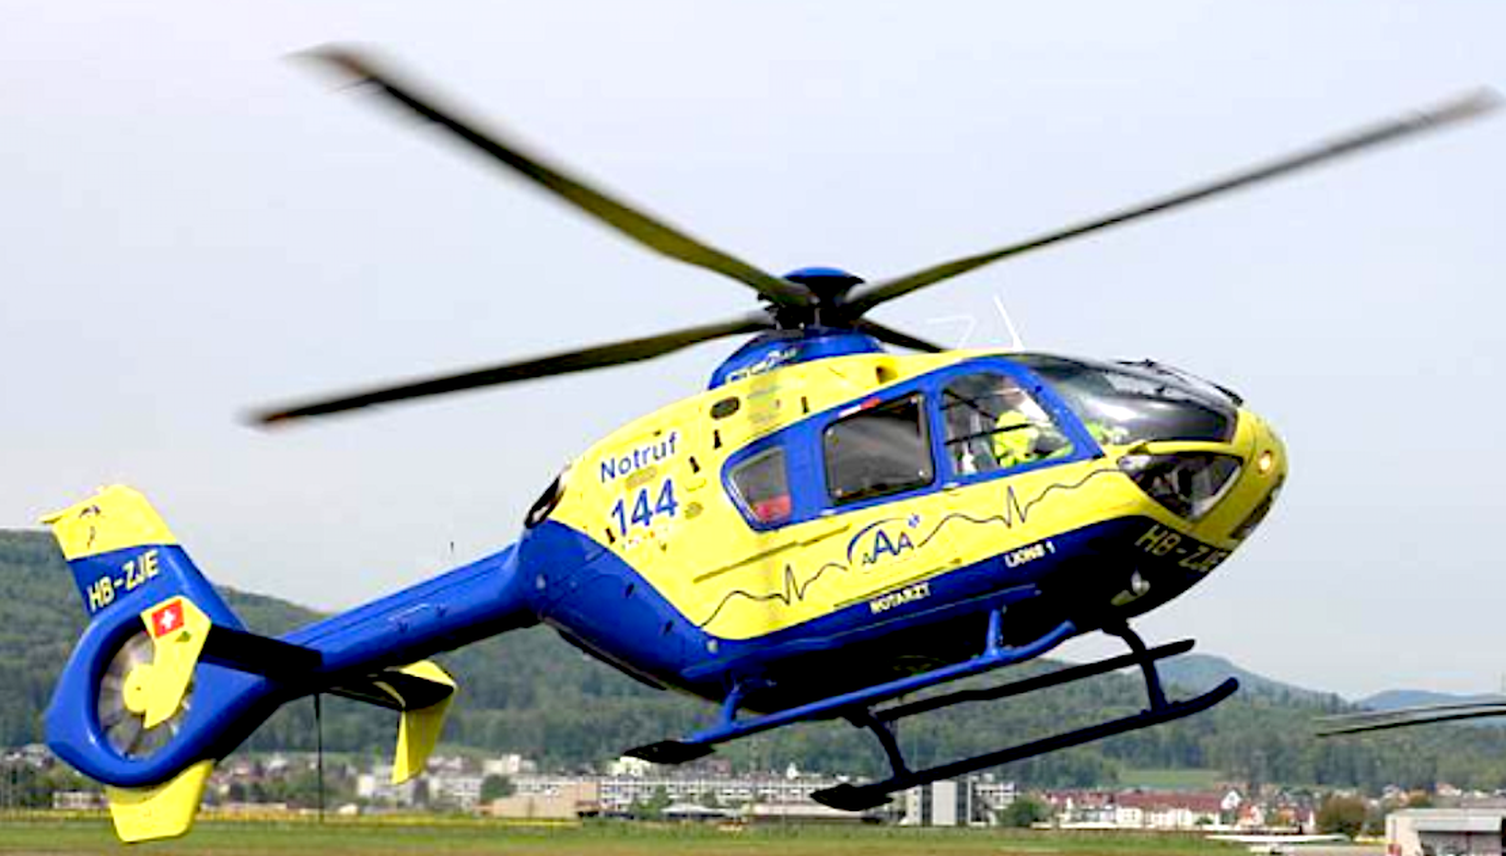 Rettungshelikopter konkurrenzieren sich in der Luft